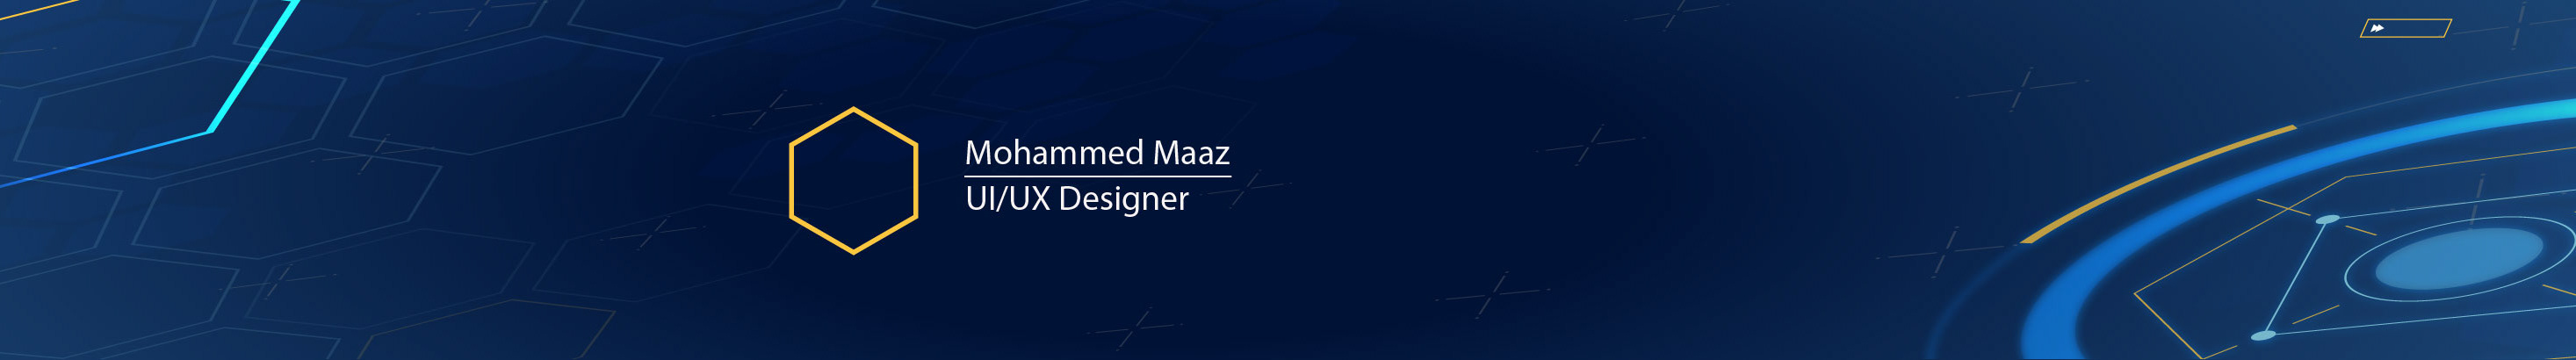 Mohammed Maaz's profile banner